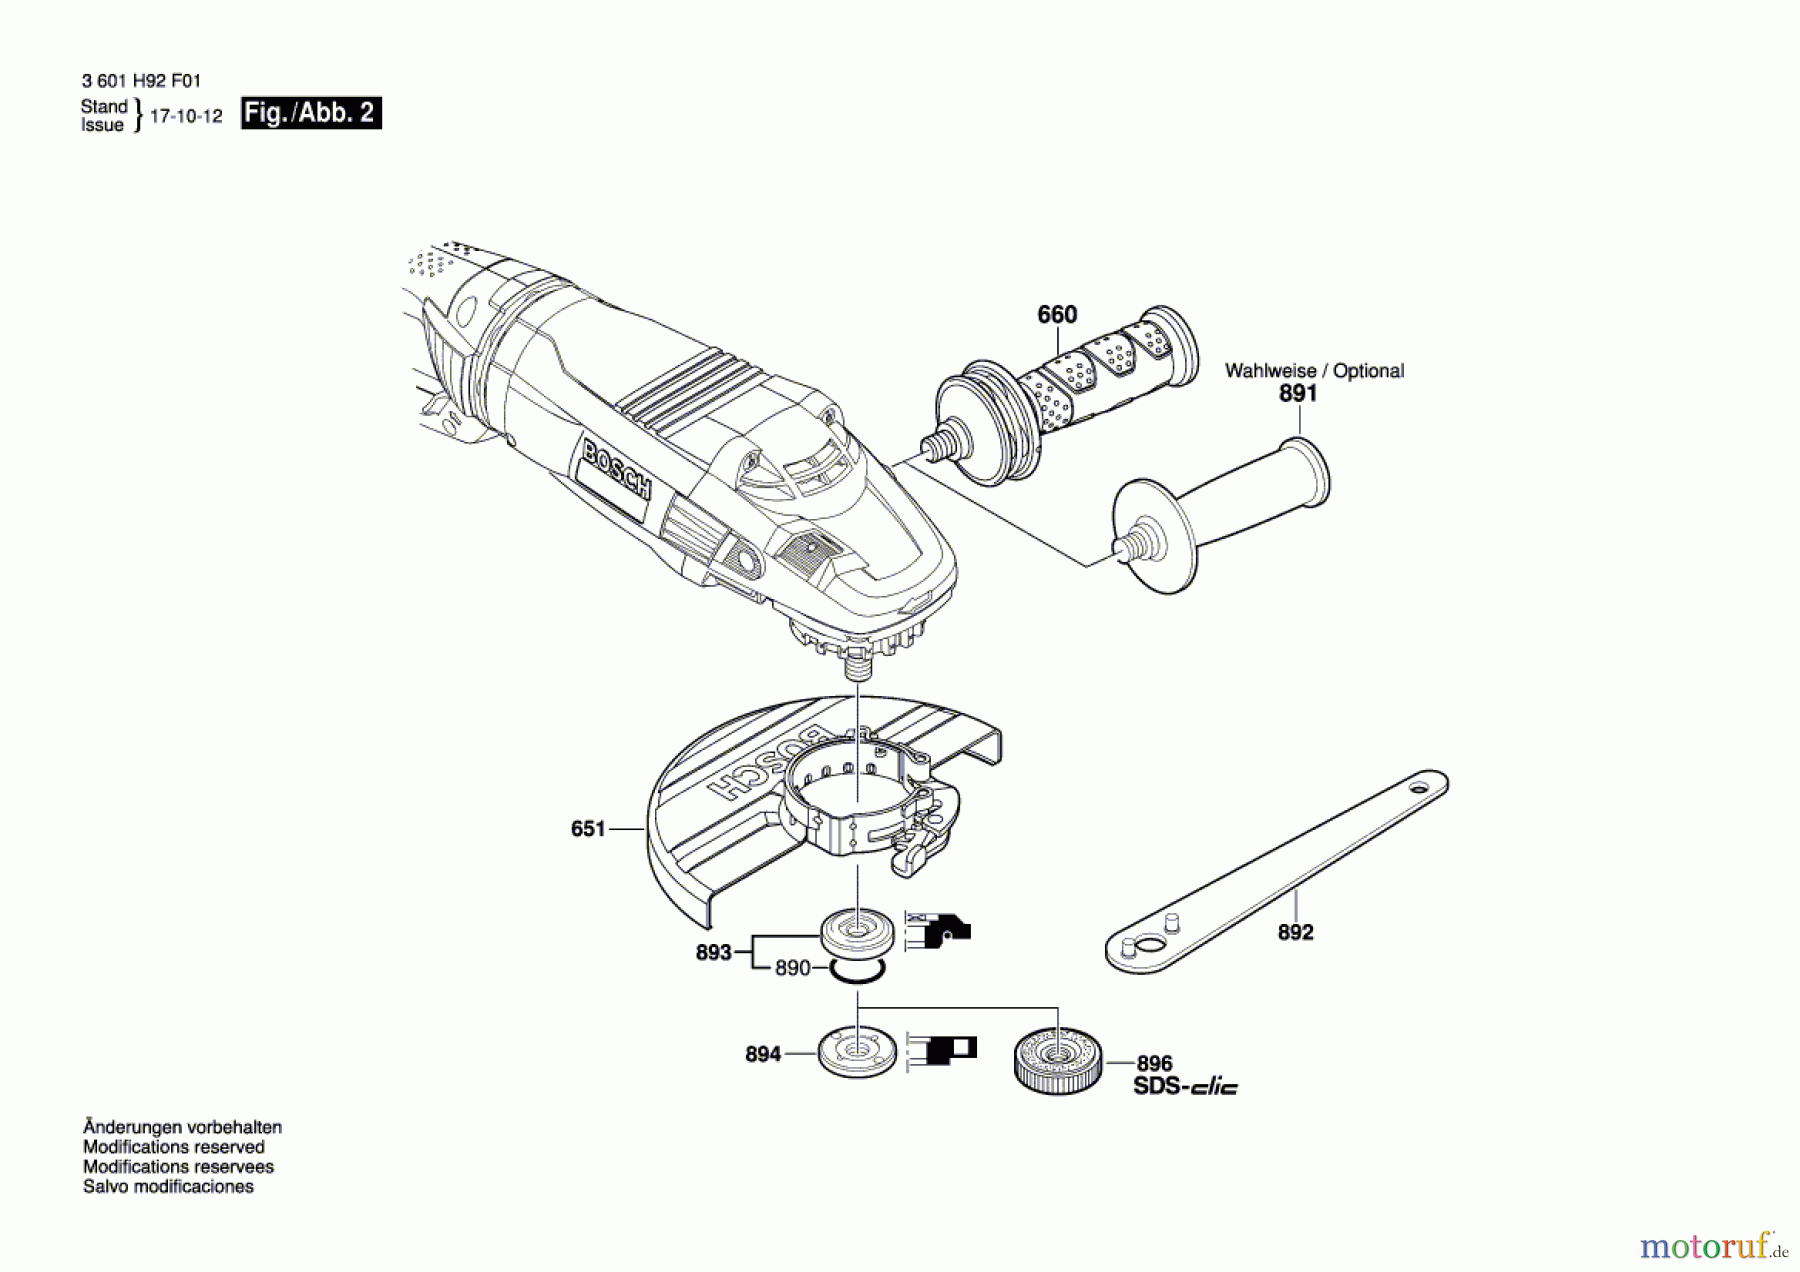  Bosch Werkzeug Winkelschleifer GWS 26-180 LVI Seite 2